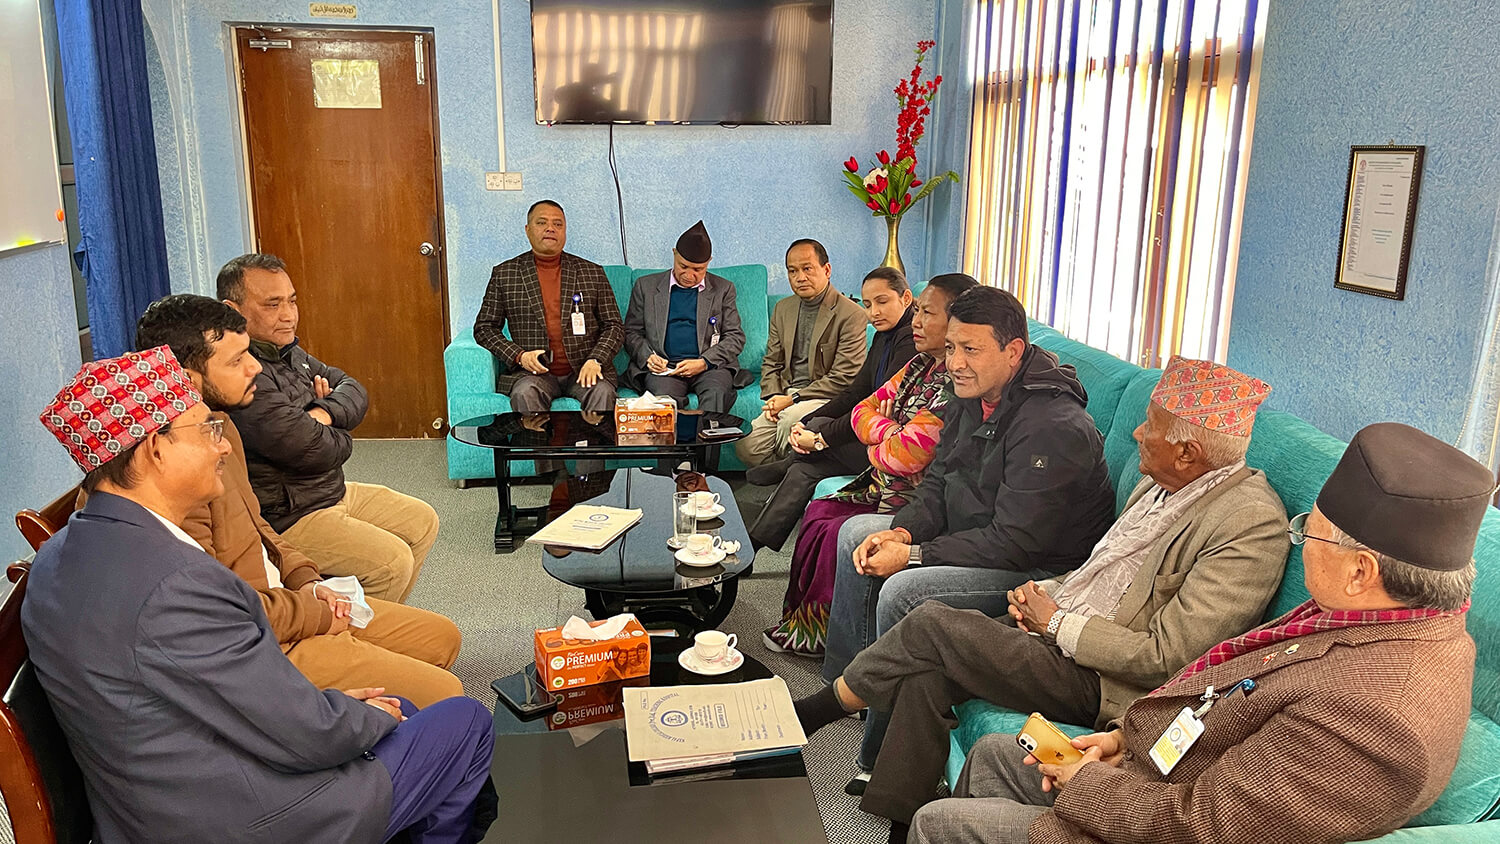 नेपाल मेडिकल कलेजको स्वास्थ्य सेवा बारे स्थानीय जनप्रतिनिधिसँग छलफल